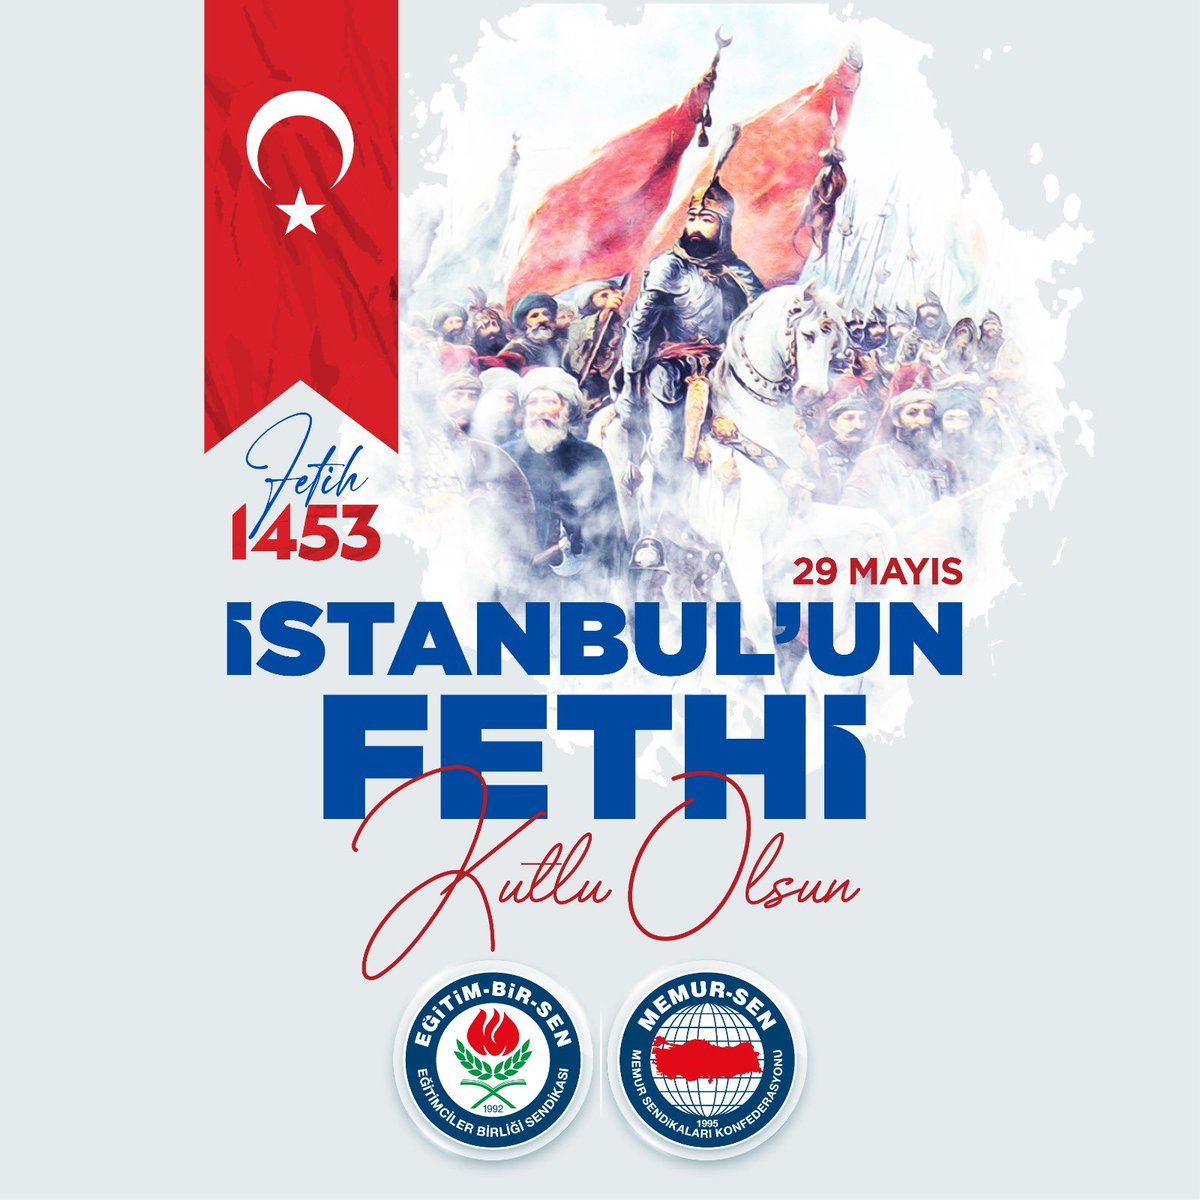 Tarihin istikametini değiştiren, çağ açıp çağ kapatan İstanbul'un Fethi'nin 570. yıl dönümü kutlu olsun.

Fatih Sultan Mehmet Han'ı, kahraman ordusunu ve toprağa düşmüş aziz şehitlerimizi rahmet ve minnetle yâd ediyorum.

#İstanbulunFethi #FatihSultanMehmetHan